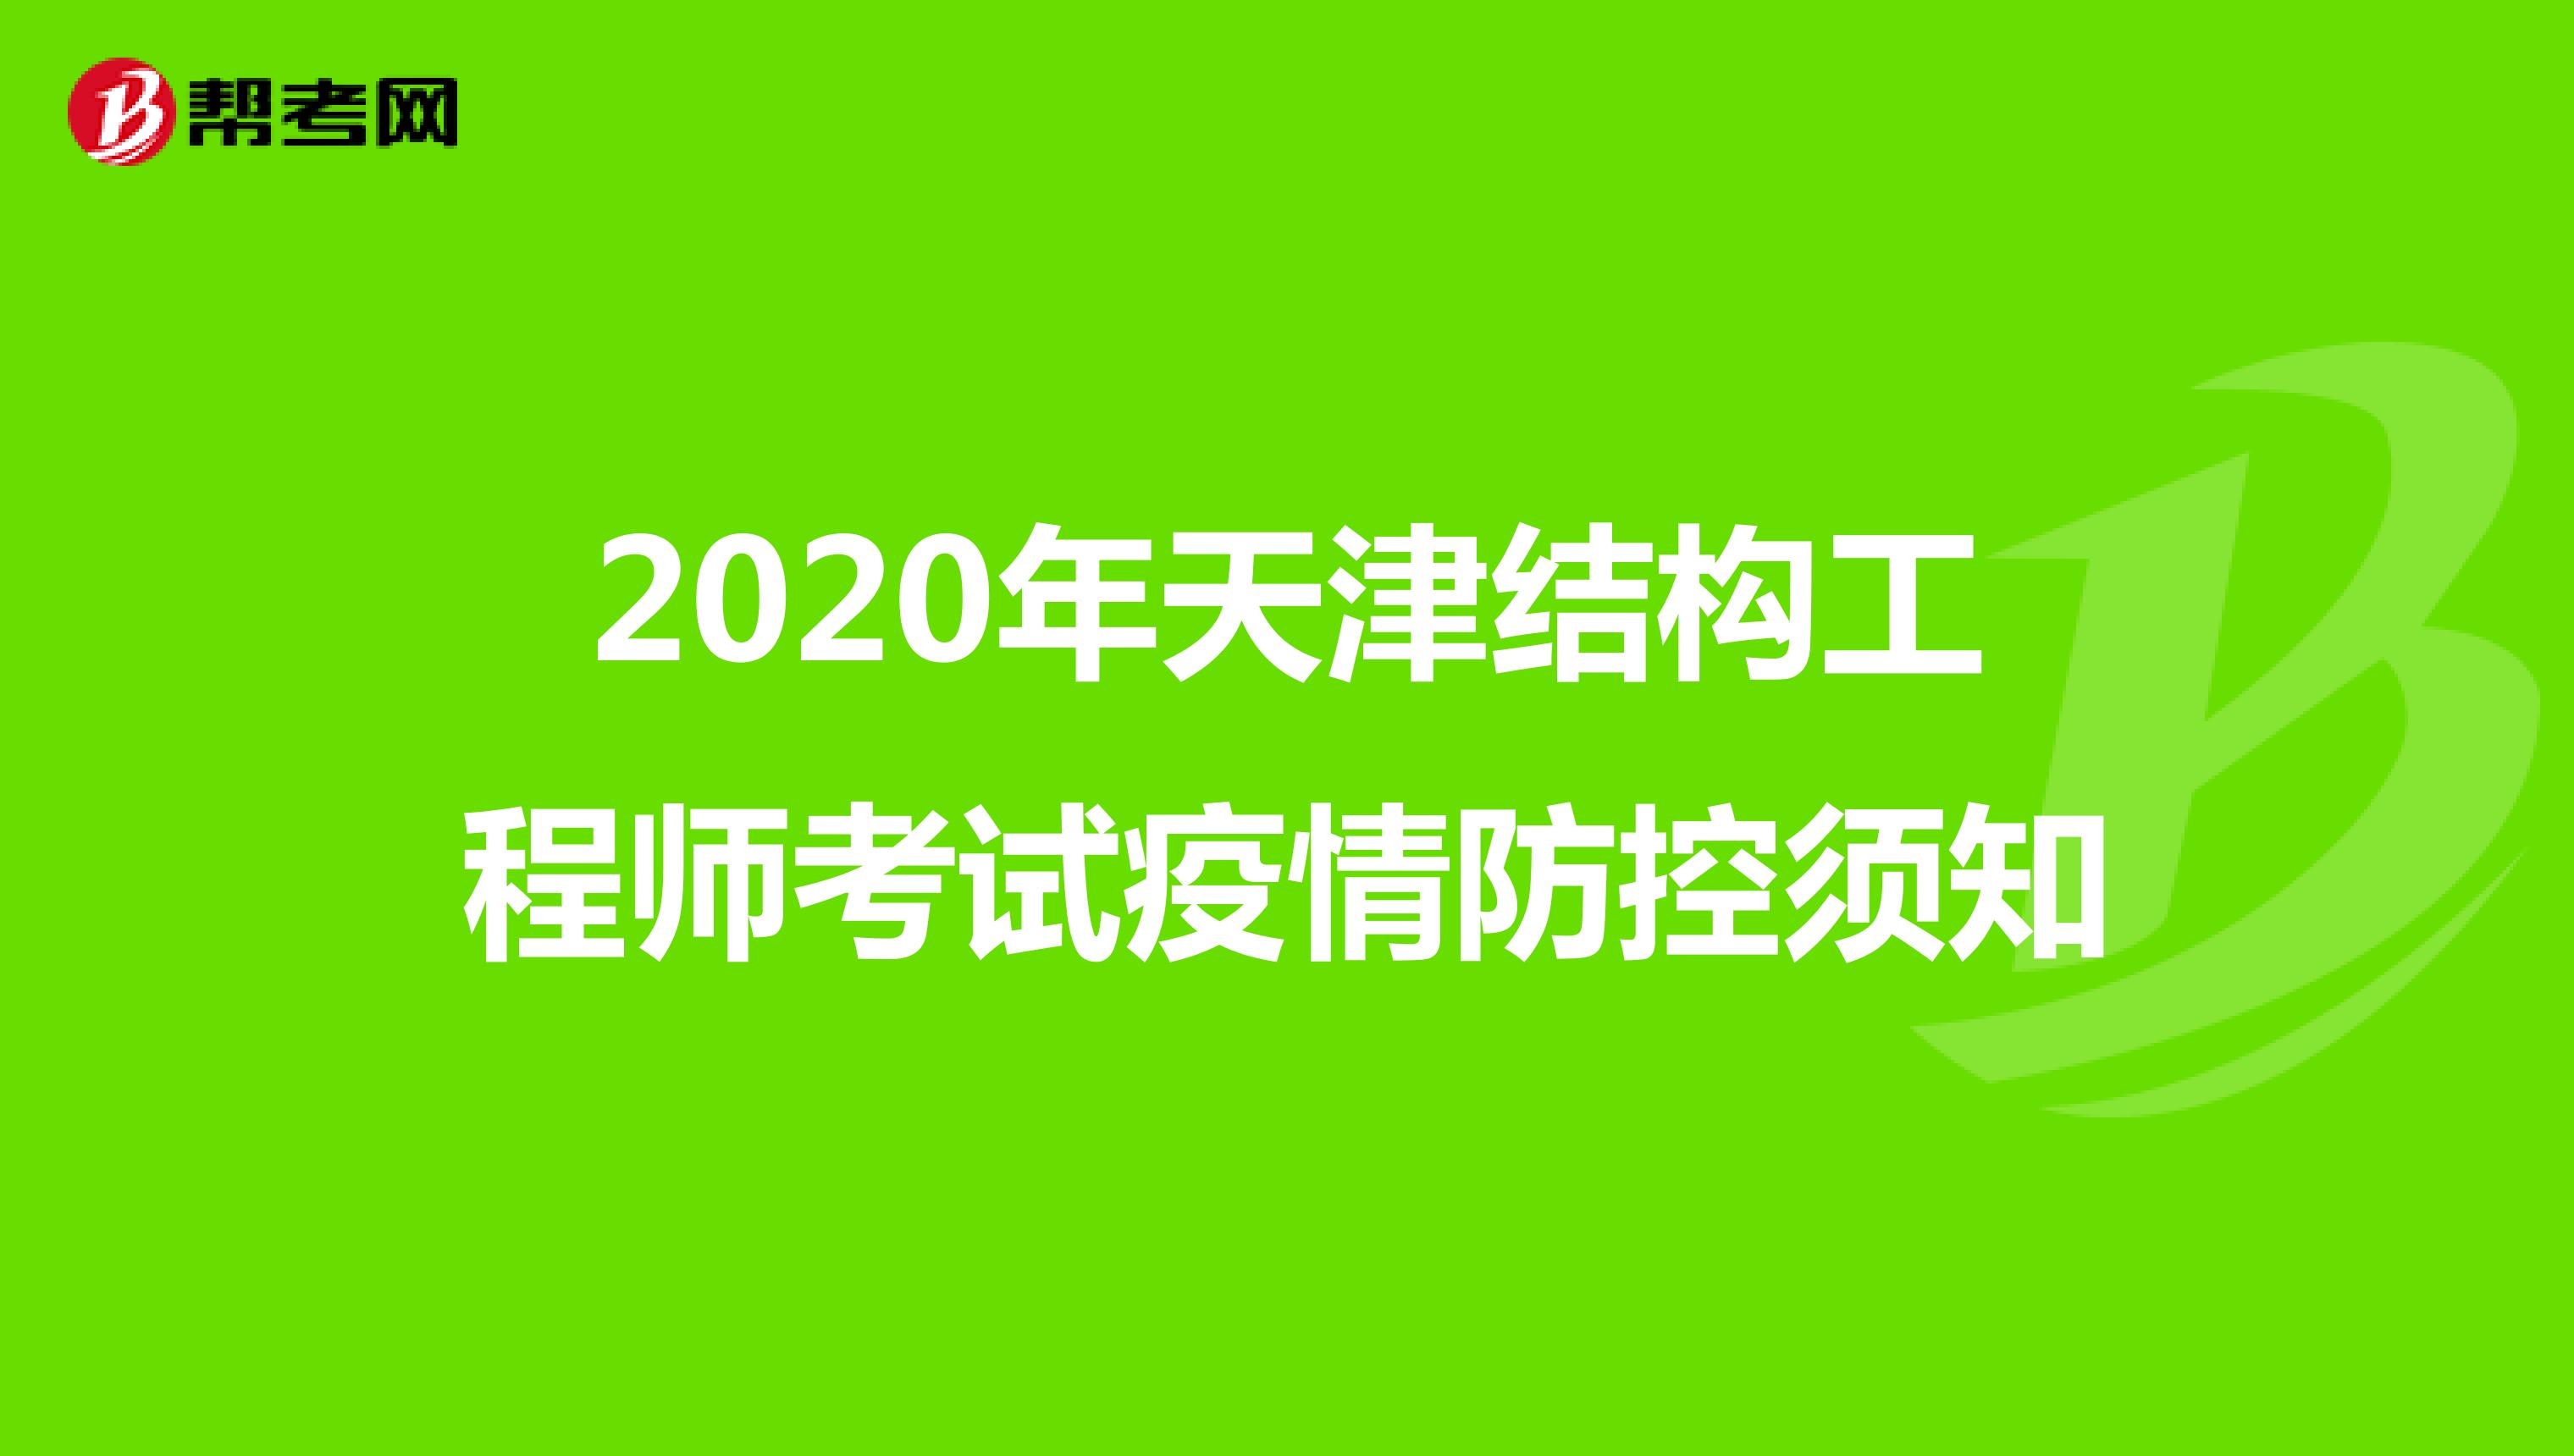 2020年天津结构工程师考试疫情防控须知